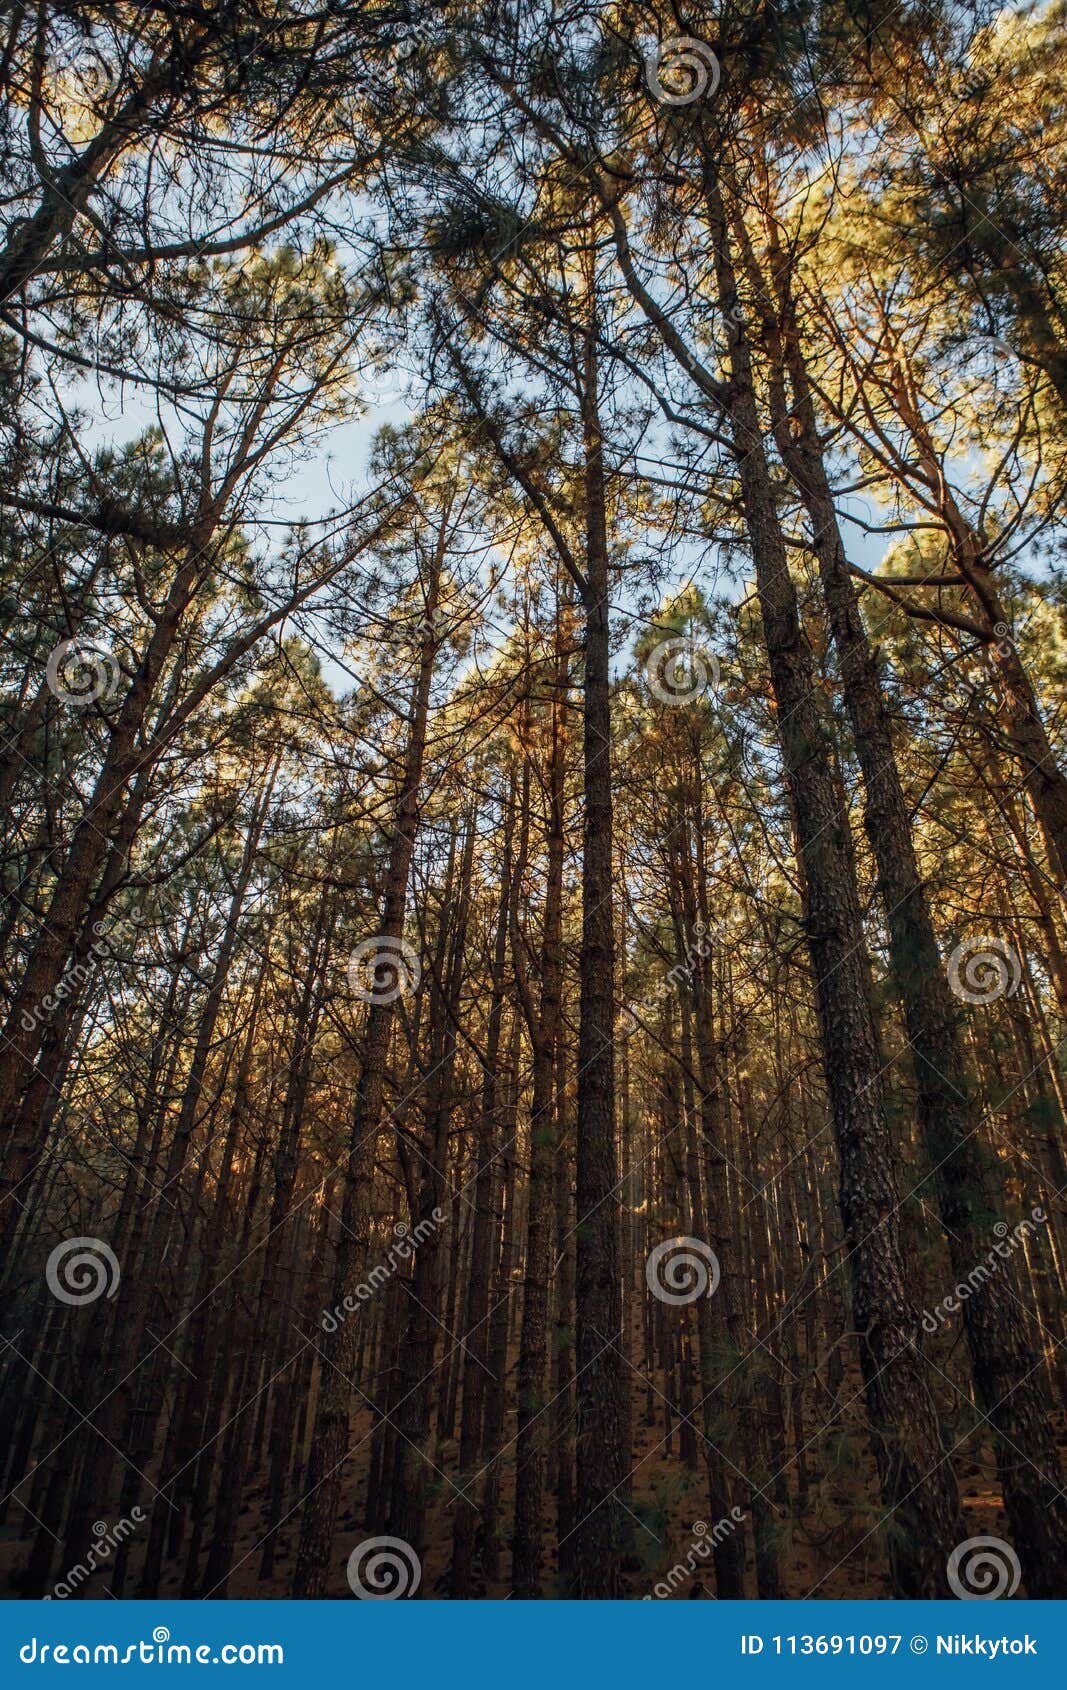 pine trees in forest la esperanza